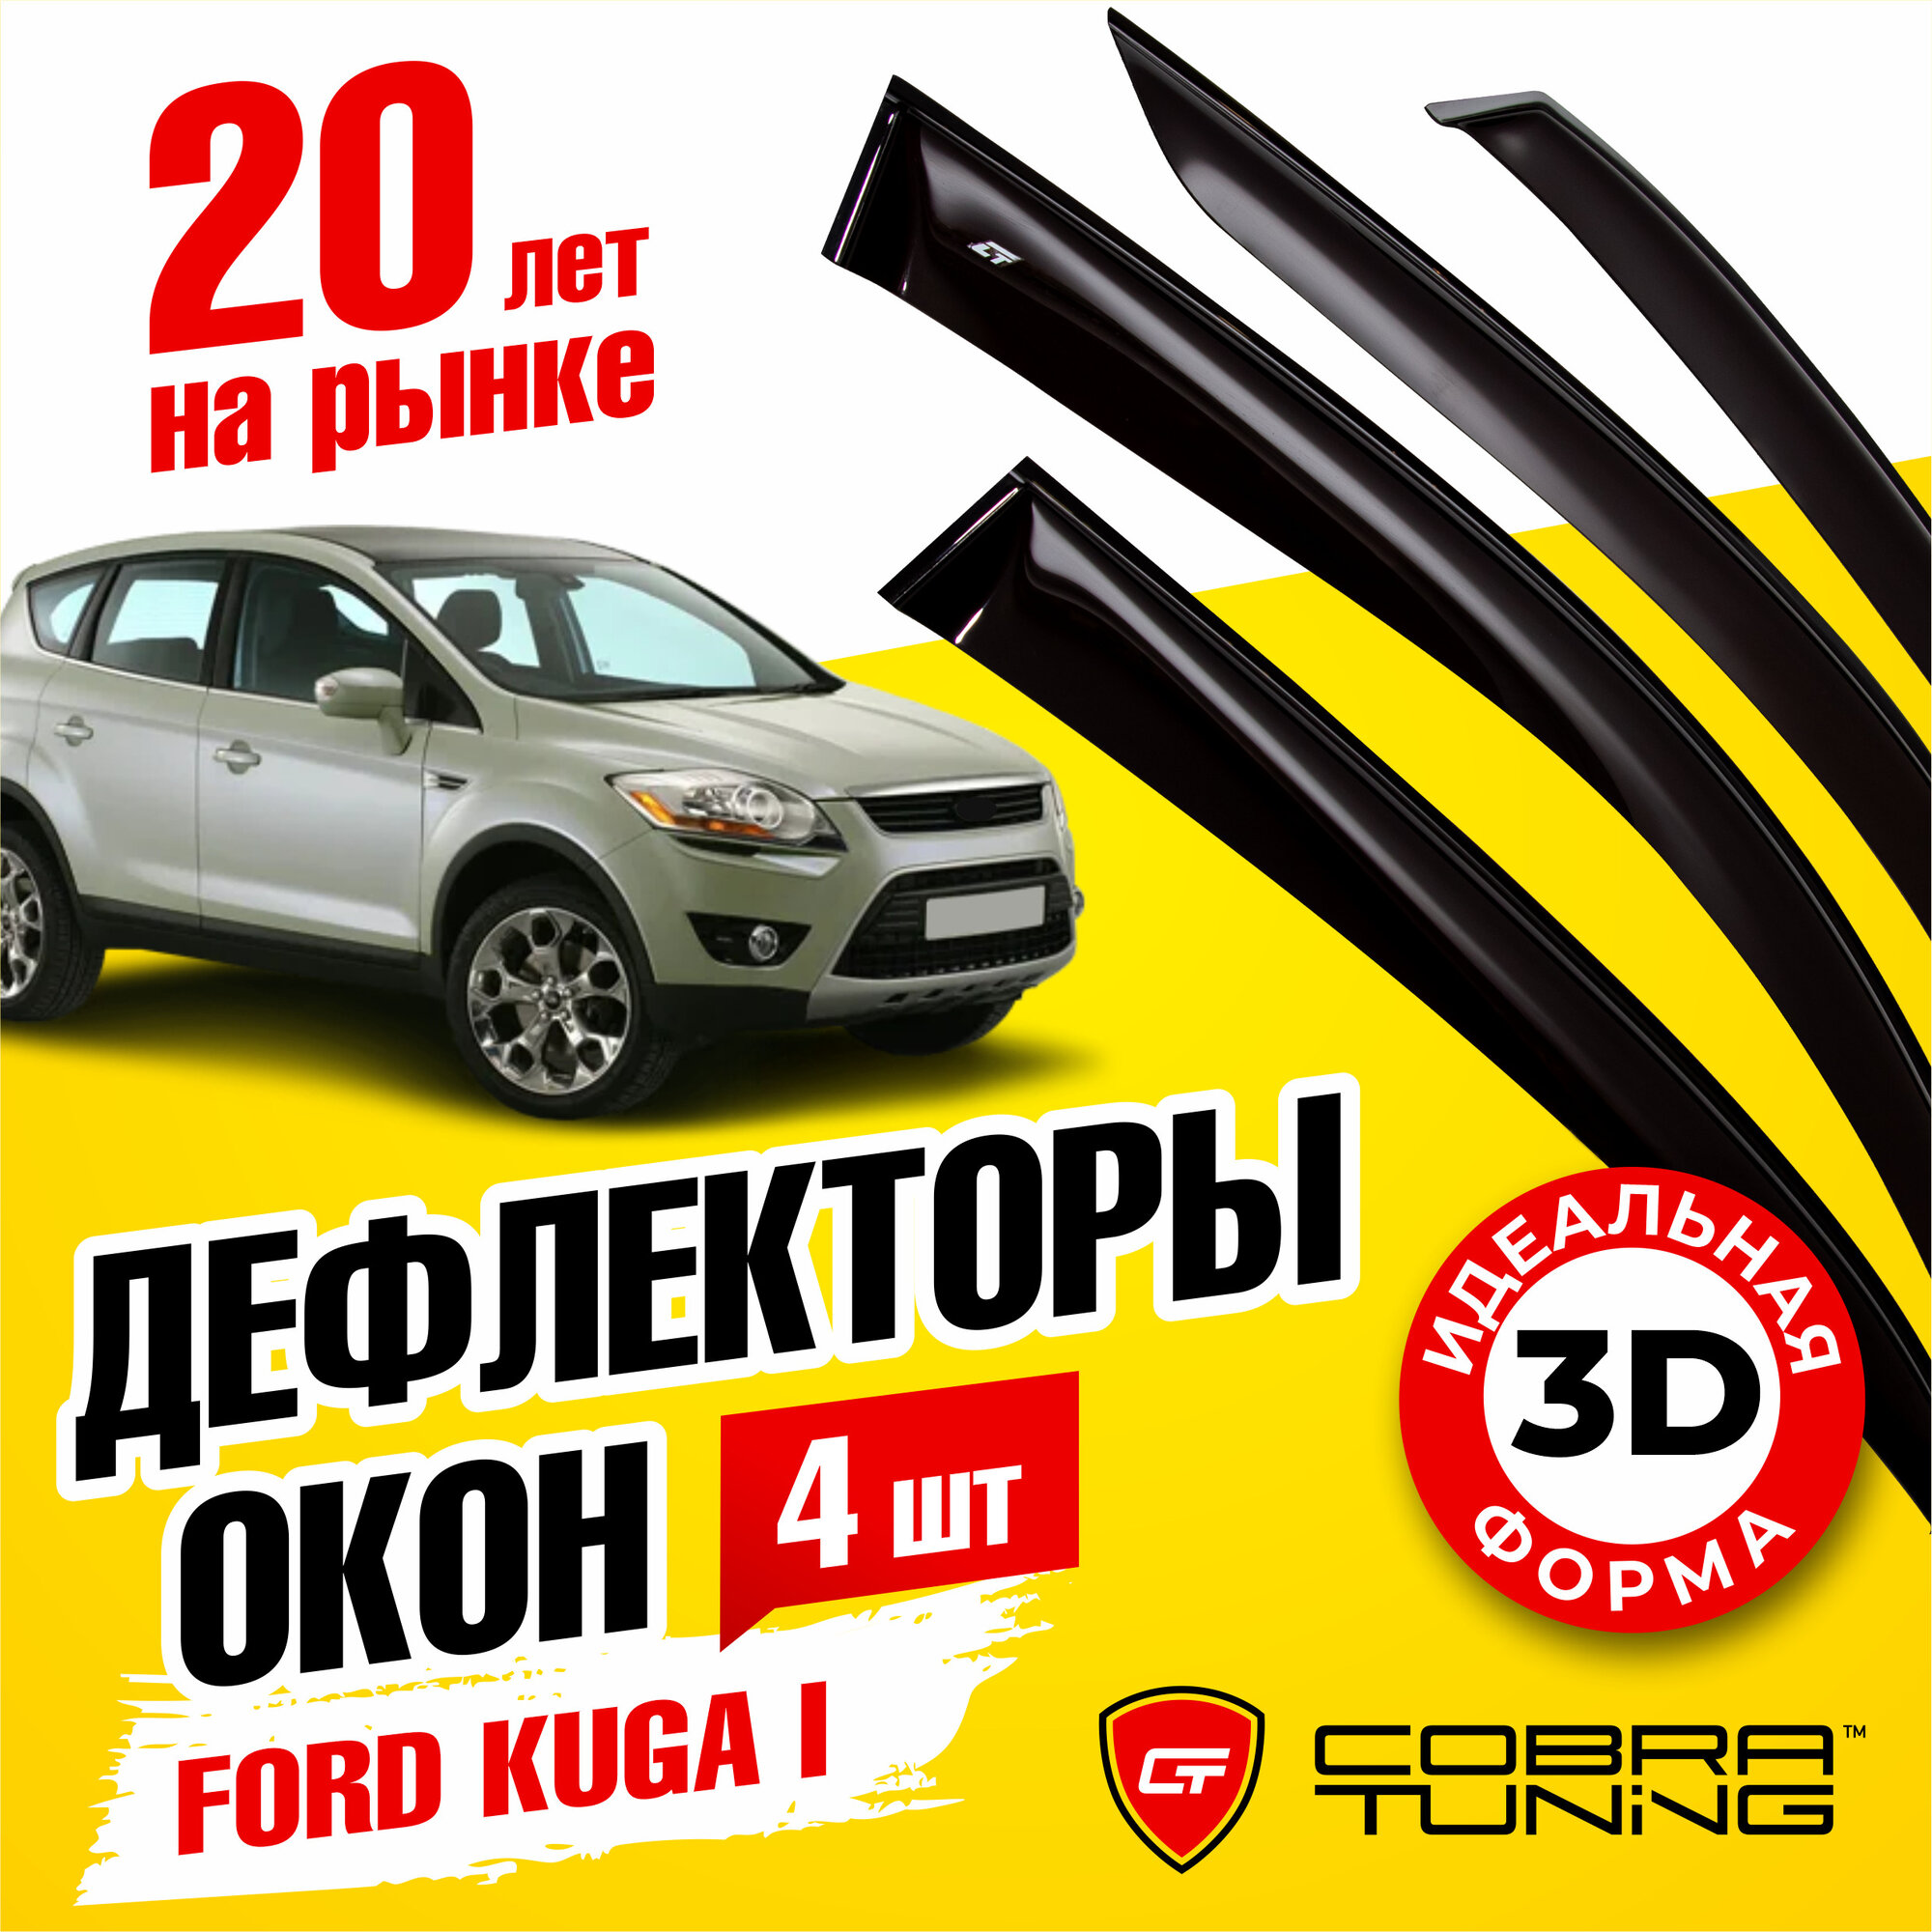 Дефлекторы боковых окон для Ford Kuga (Форд Куга) 2008-2012, ветровики на двери автомобиля, Cobra Tuning